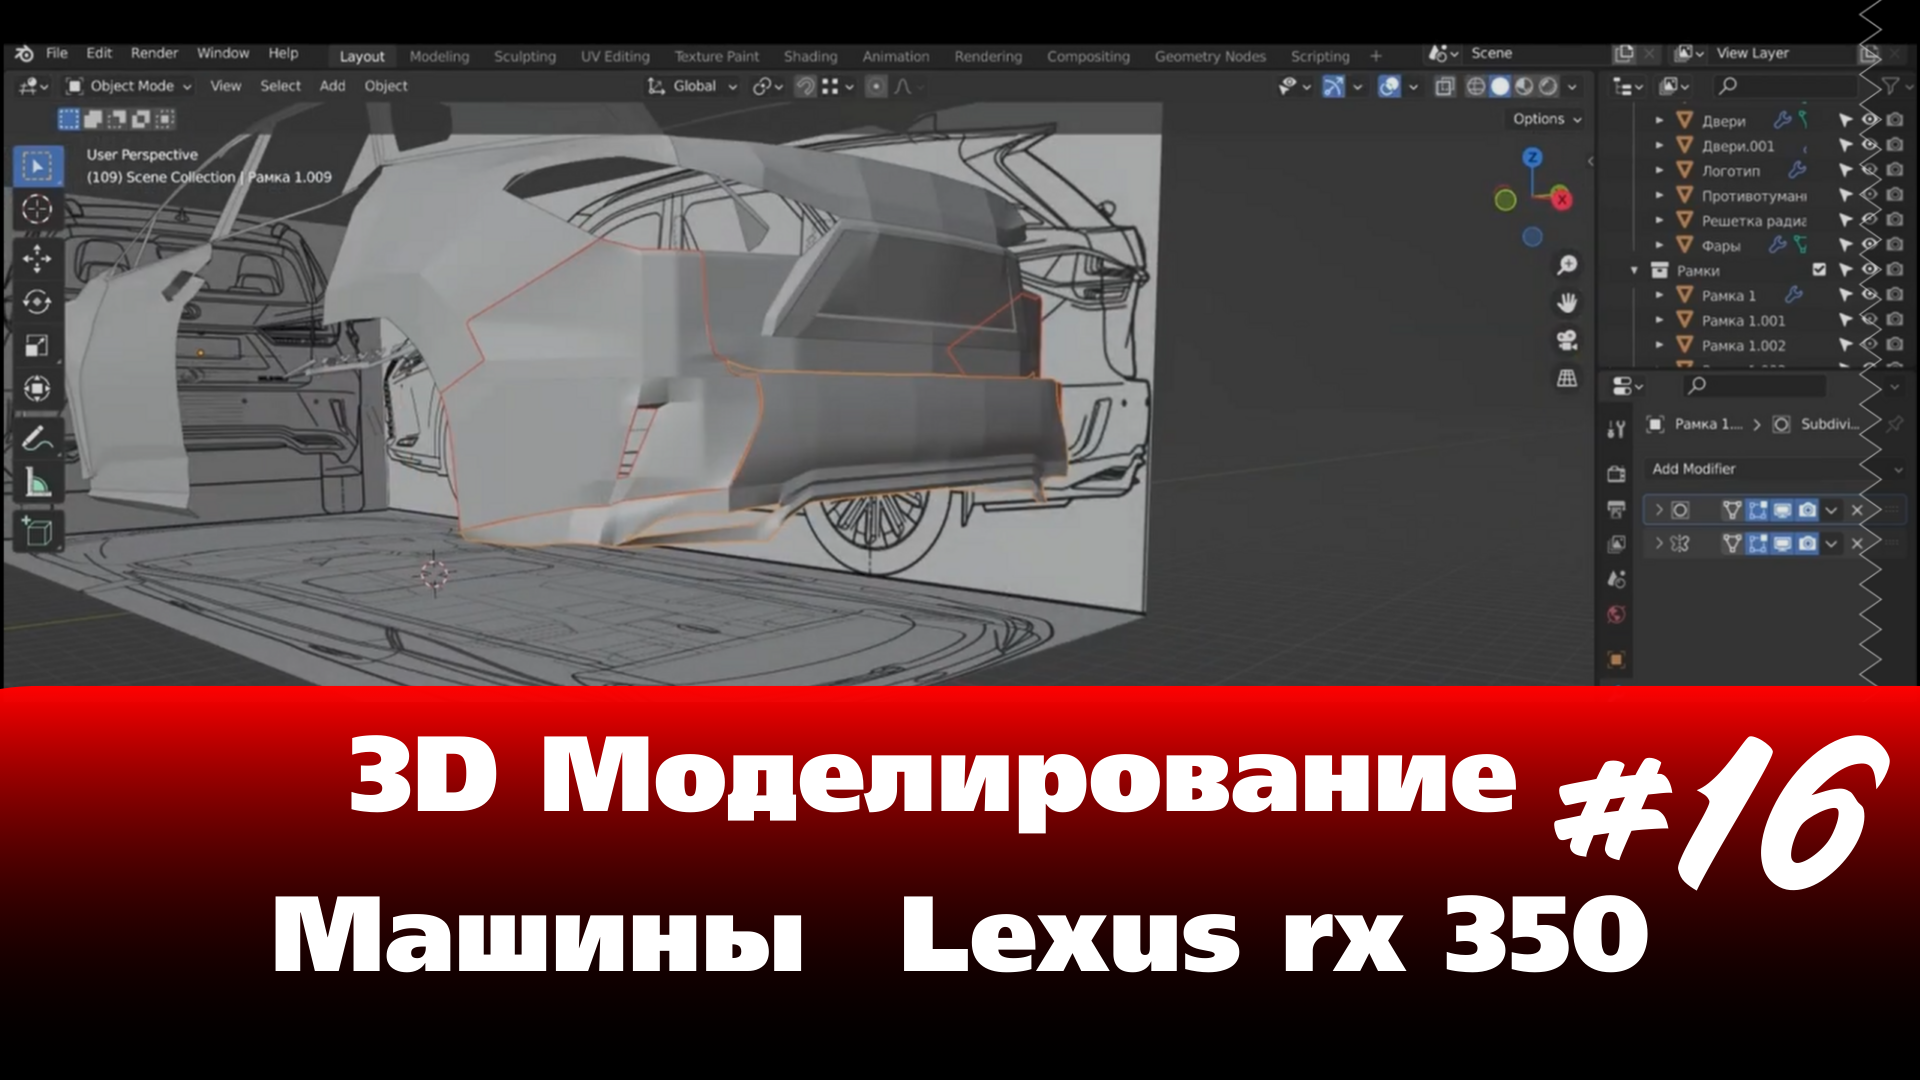 3D Моделирование Машины в Blender - Lexus rx 350 часть 16 #blender